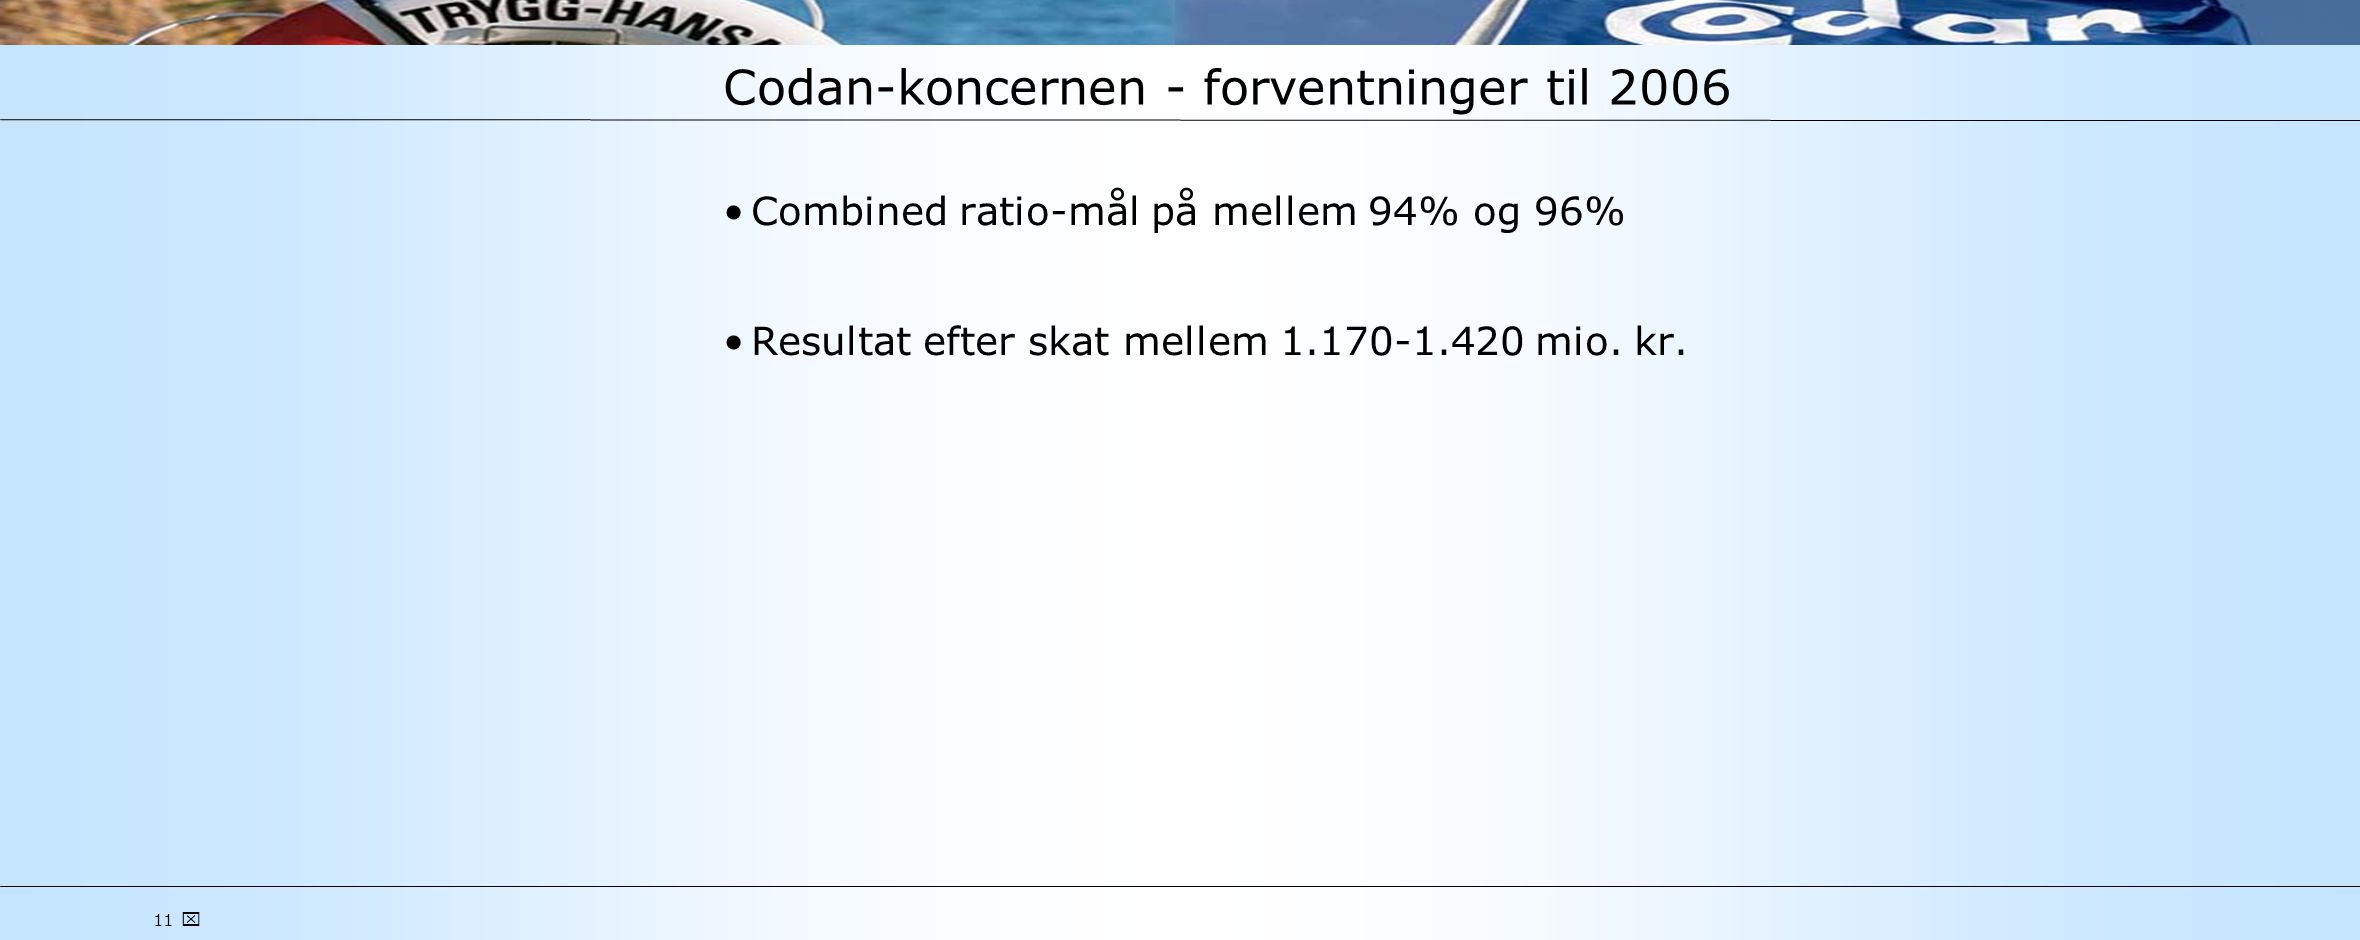 11  Codan-koncernen - forventninger til 2006 •Combined ratio-mål på mellem 94% og 96% •Resultat efter skat mellem mio.